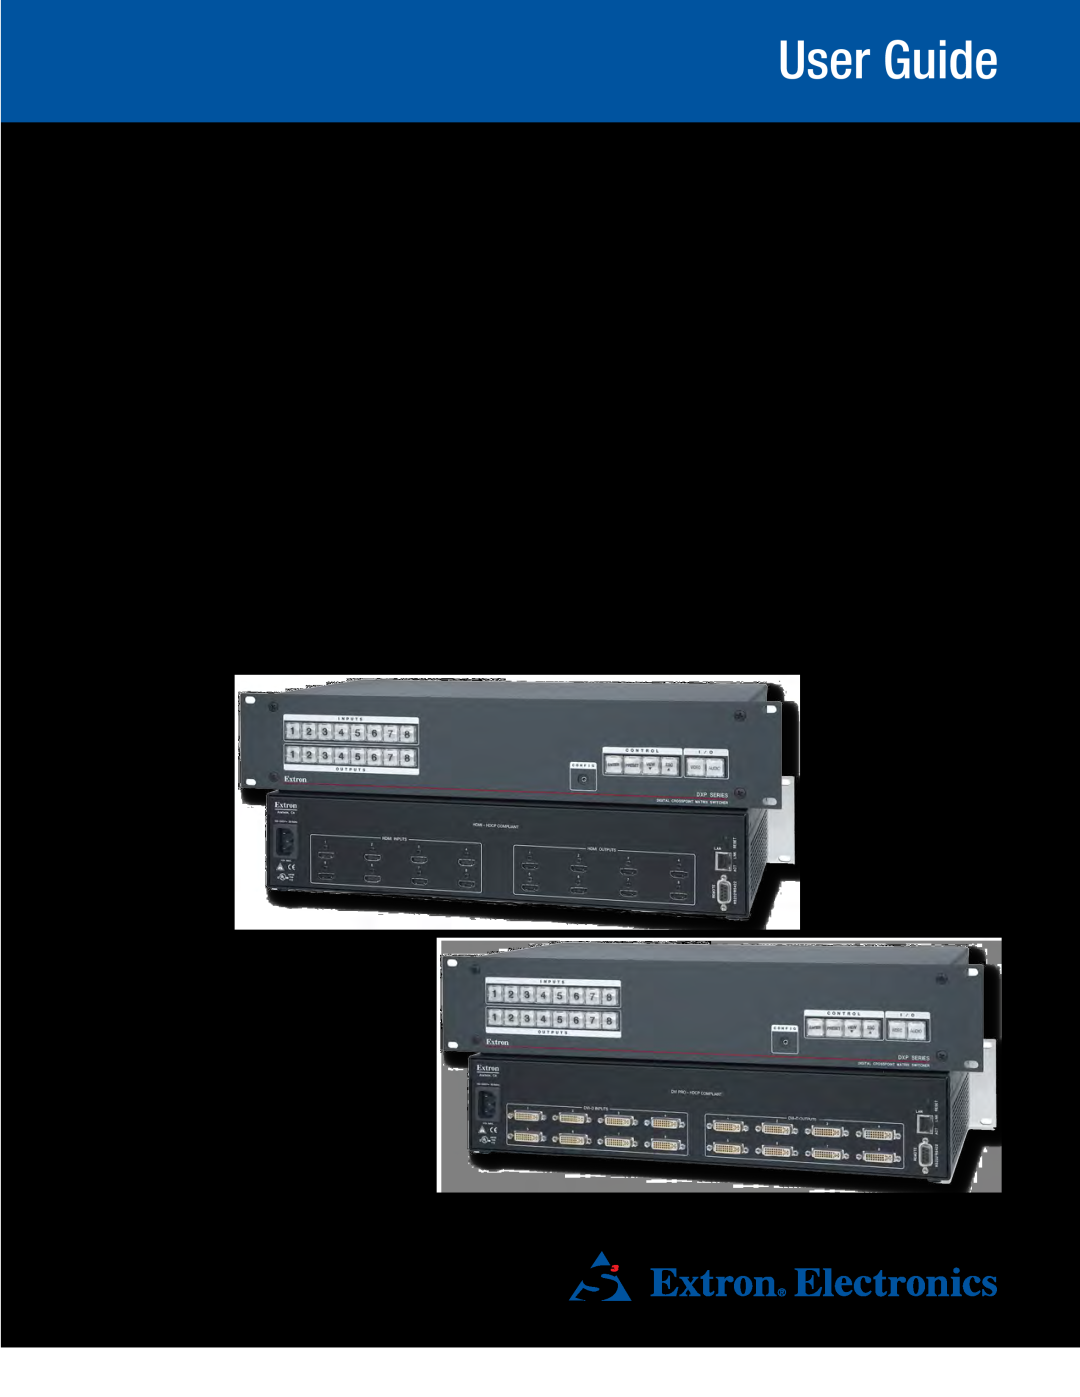 Extron electronic DXP DVI PRO manual DXP DVI DXP DVI Pro DXP HDMI, User Guide, Matrix Switchers, 68-2192-01 Rev. B 